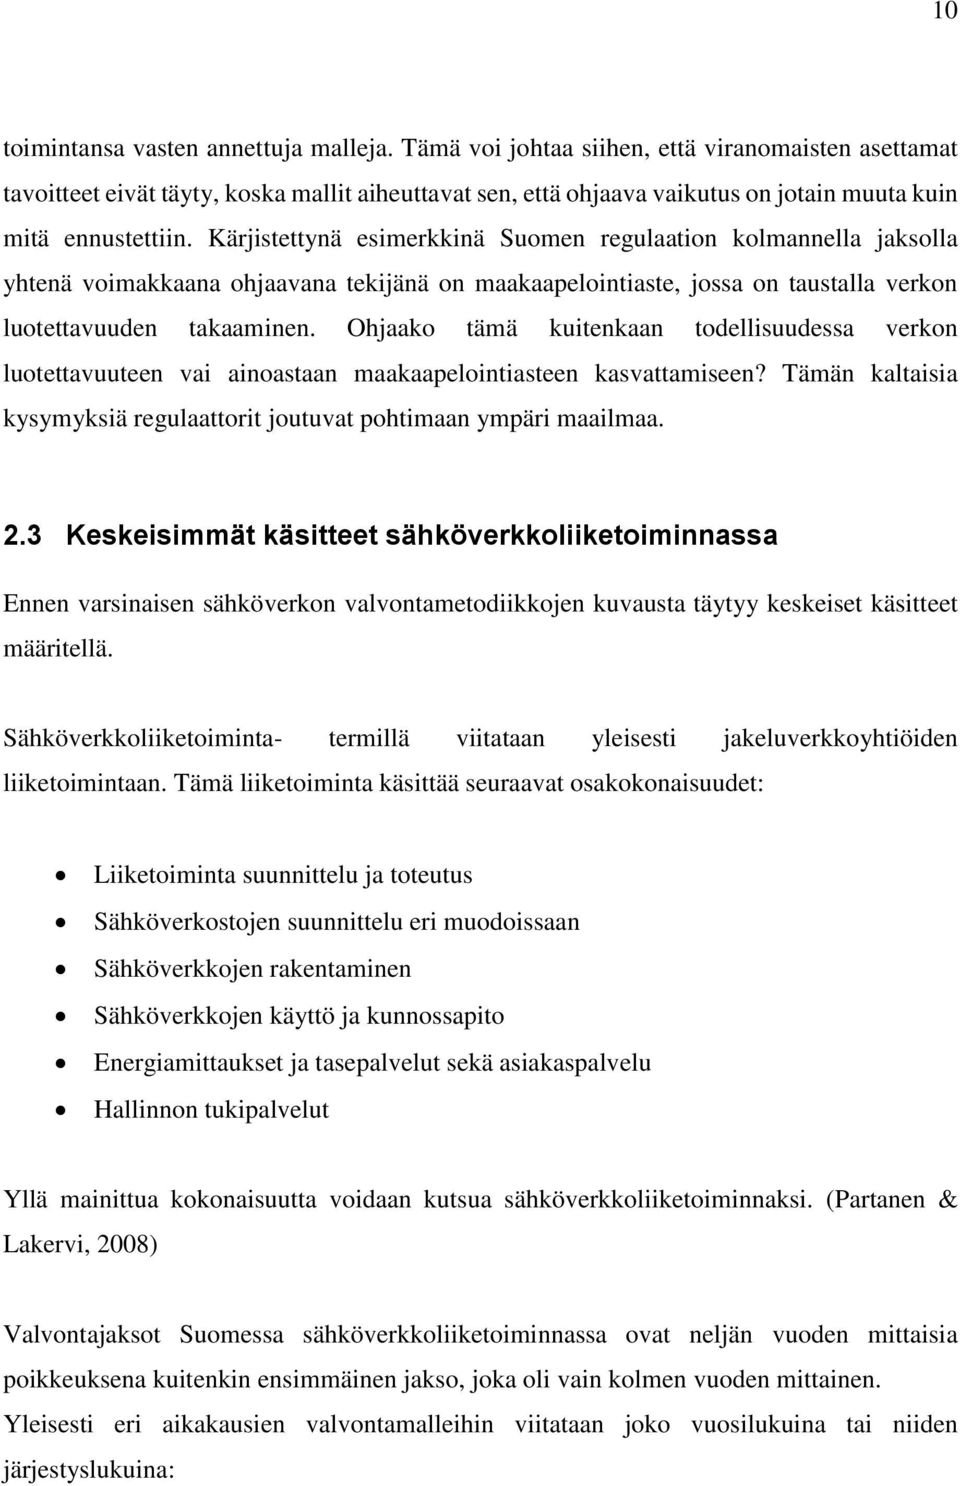 Kärjistettynä esimerkkinä Suomen regulaation kolmannella jaksolla yhtenä voimakkaana ohjaavana tekijänä on maakaapelointiaste, jossa on taustalla verkon luotettavuuden takaaminen.